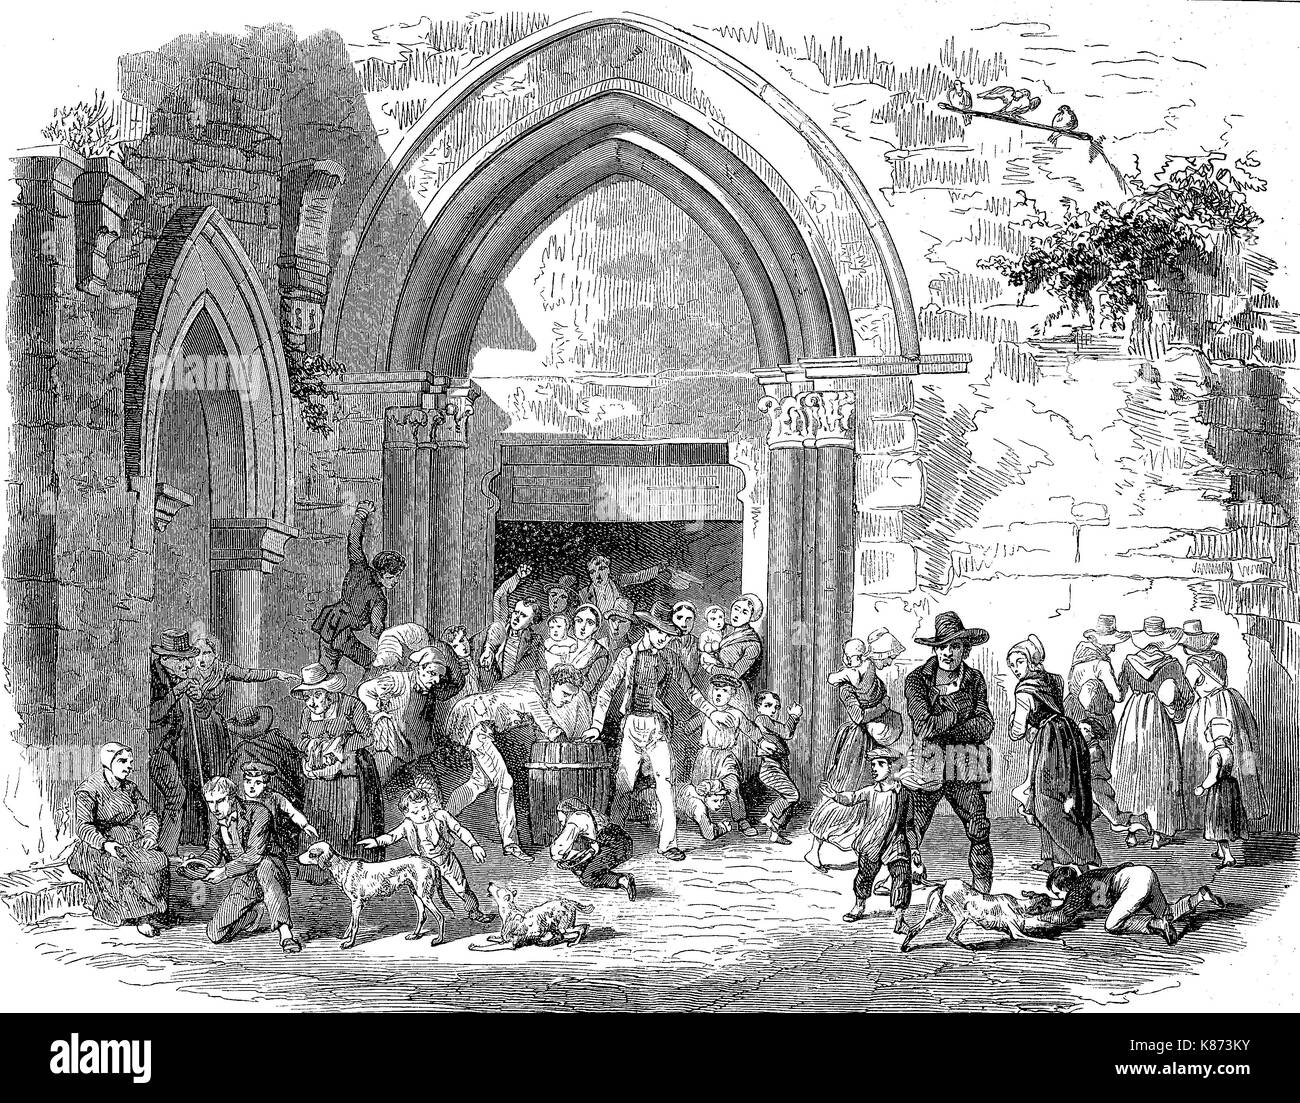 Spenden von Almosen für die armen Leute, Frankreich, 1855, Digital verbesserte Reproduktion einer Vorlage woodprint aus dem 19. Jahrhundert Stockfoto